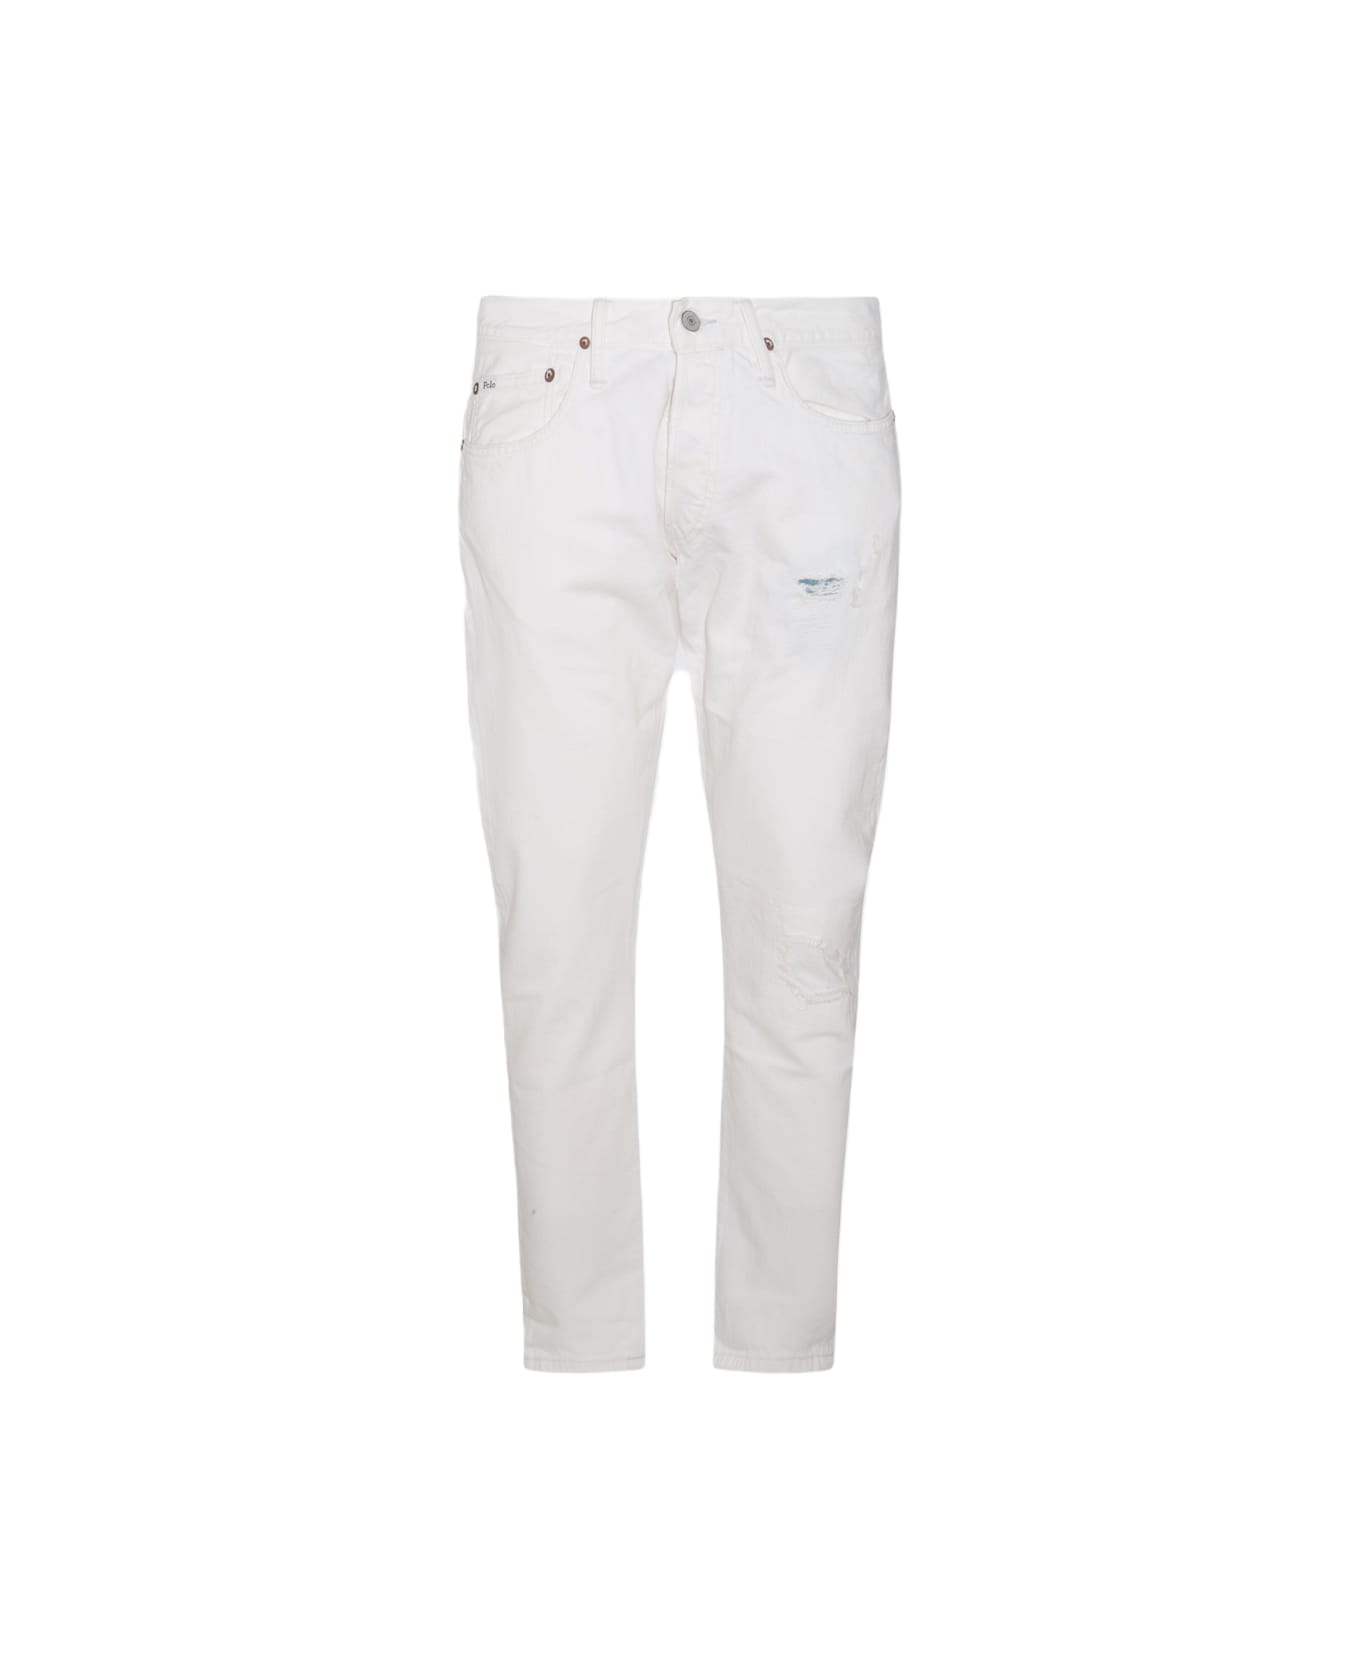 Polo Ralph Lauren White Cotton Denim Jeans - GLENGATE V2 ボトムス